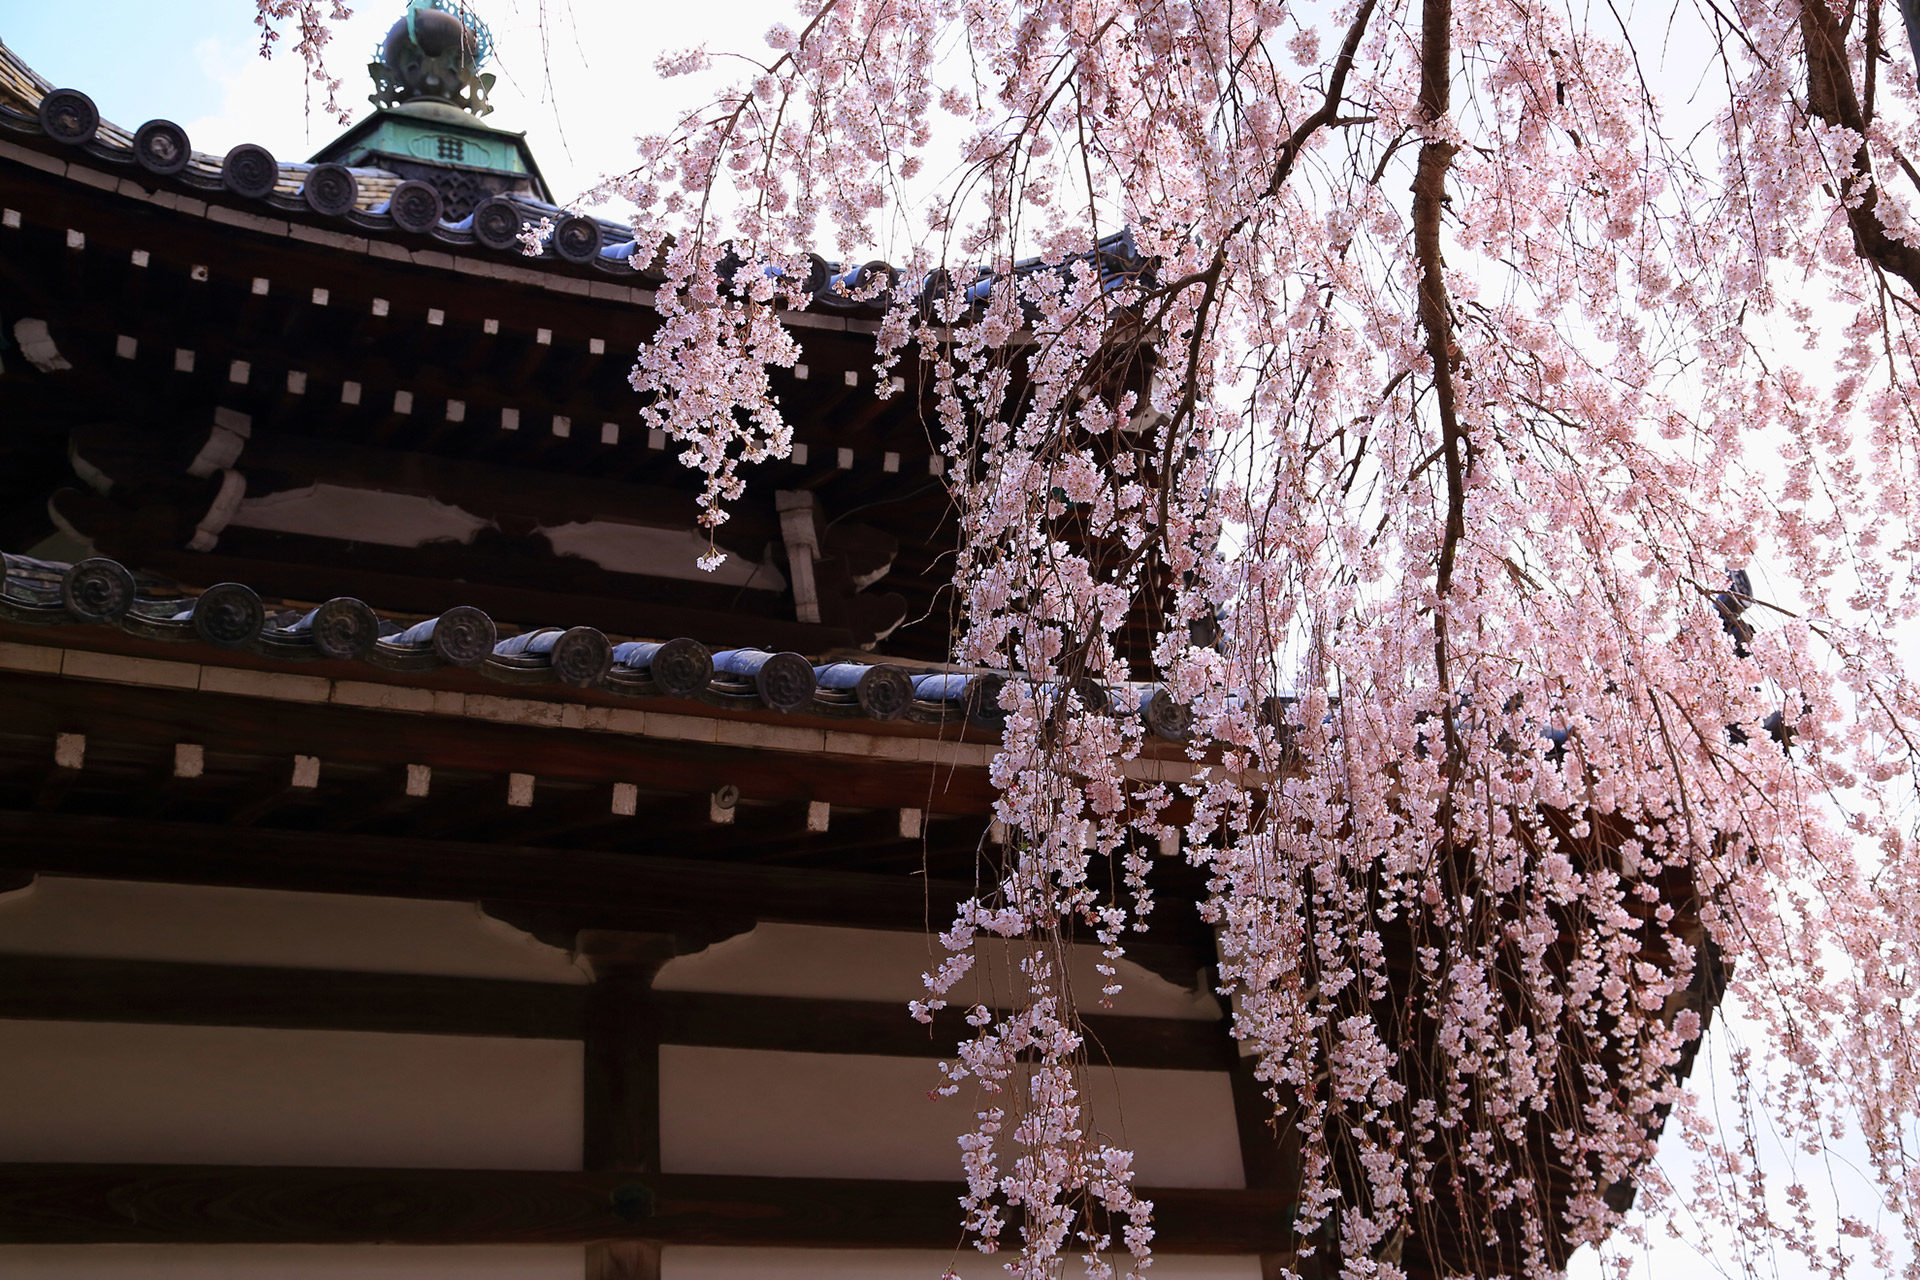 介紹推薦的京都拍照景點